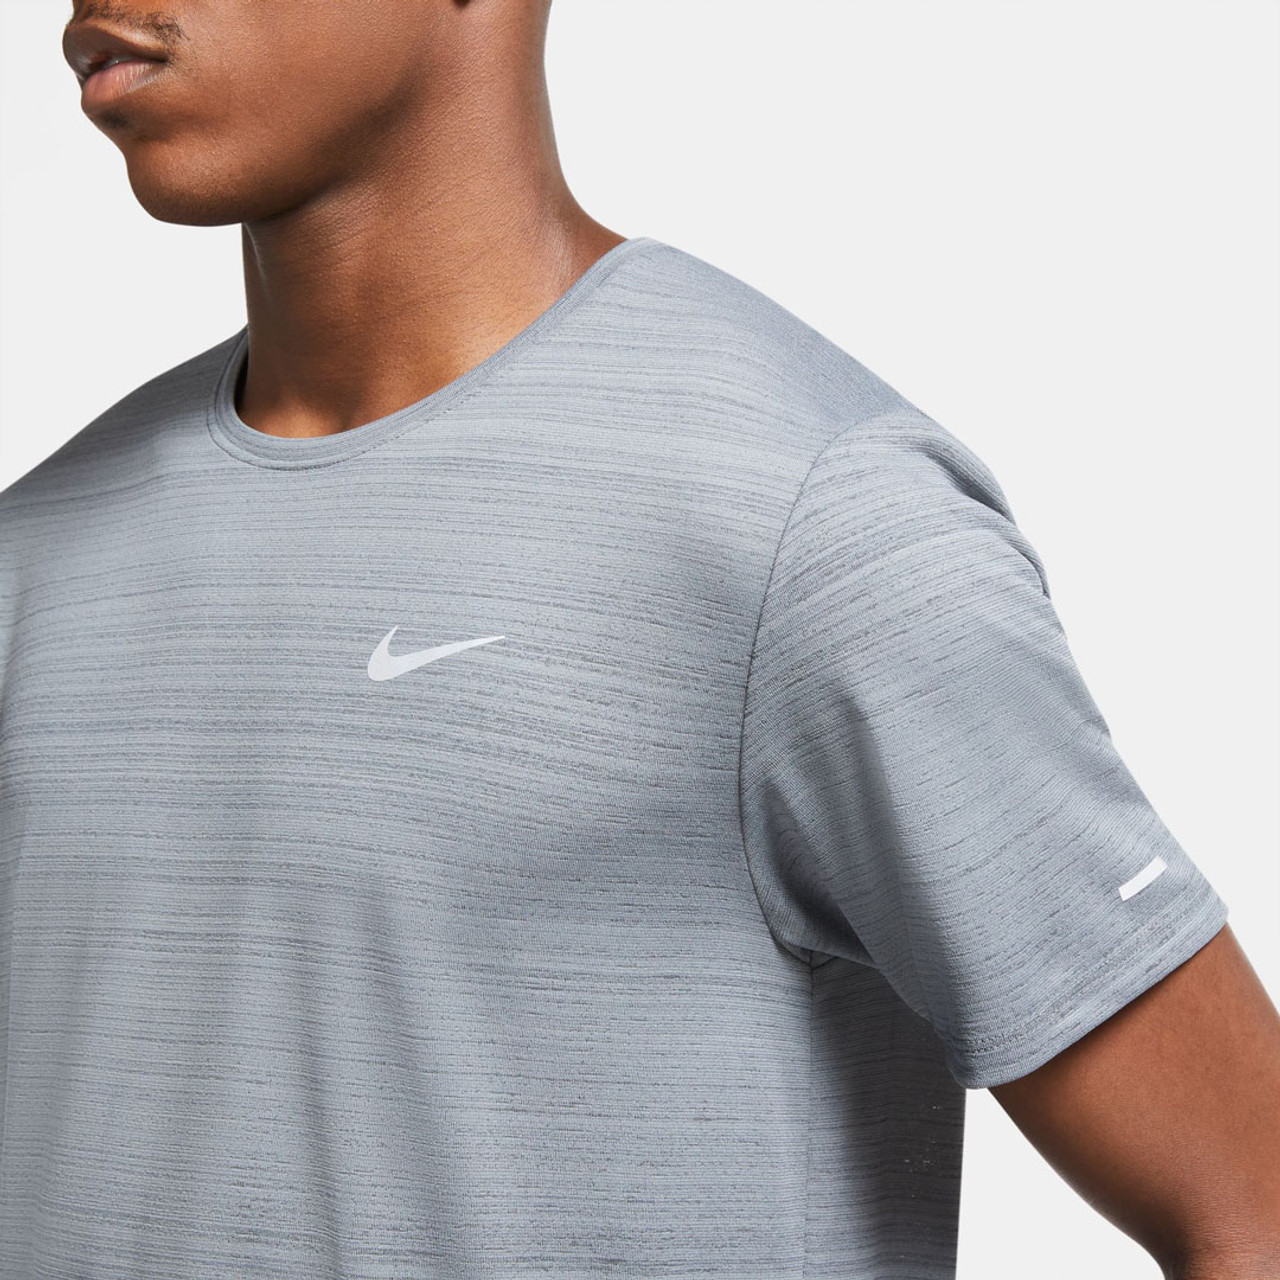 Udstyr Vandt En del Nike Men's Dri-FIT Miler Running Top $ 35 | TYLER'S